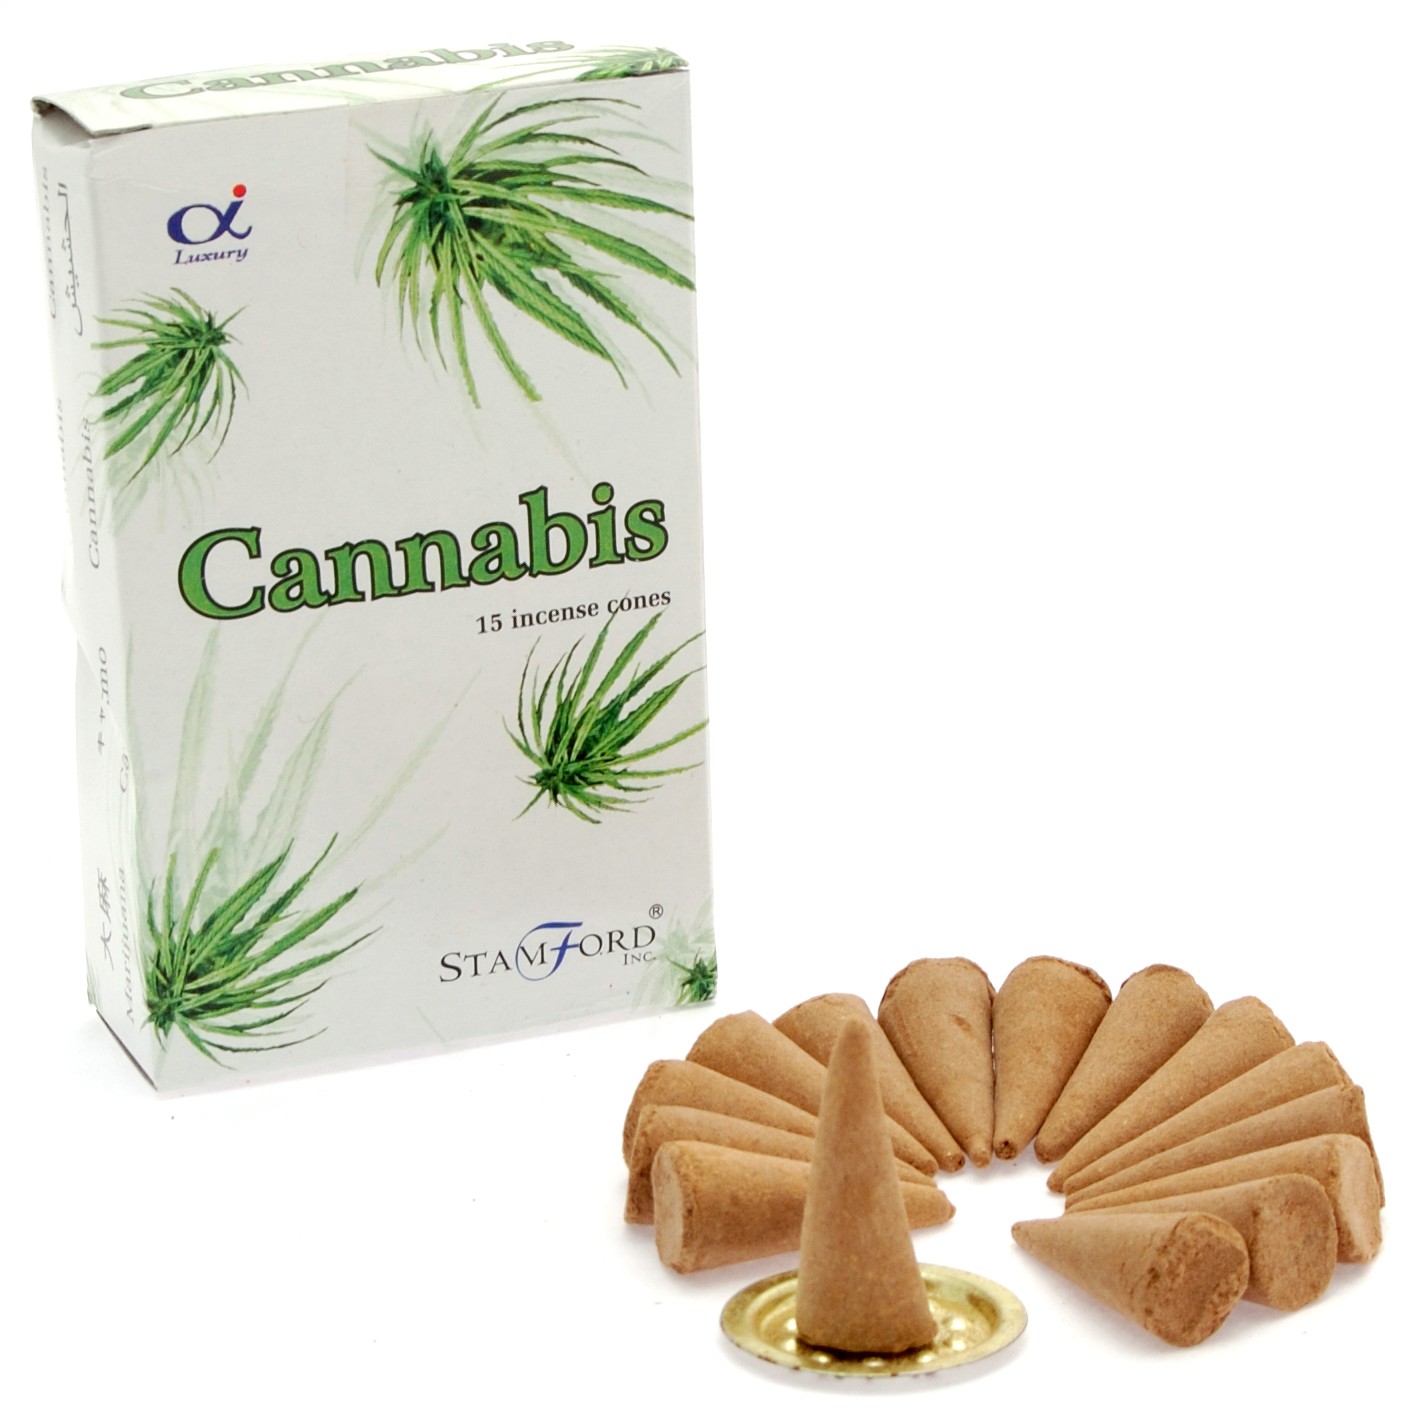 5 x Packs Premium Incense Cones - Cannabis